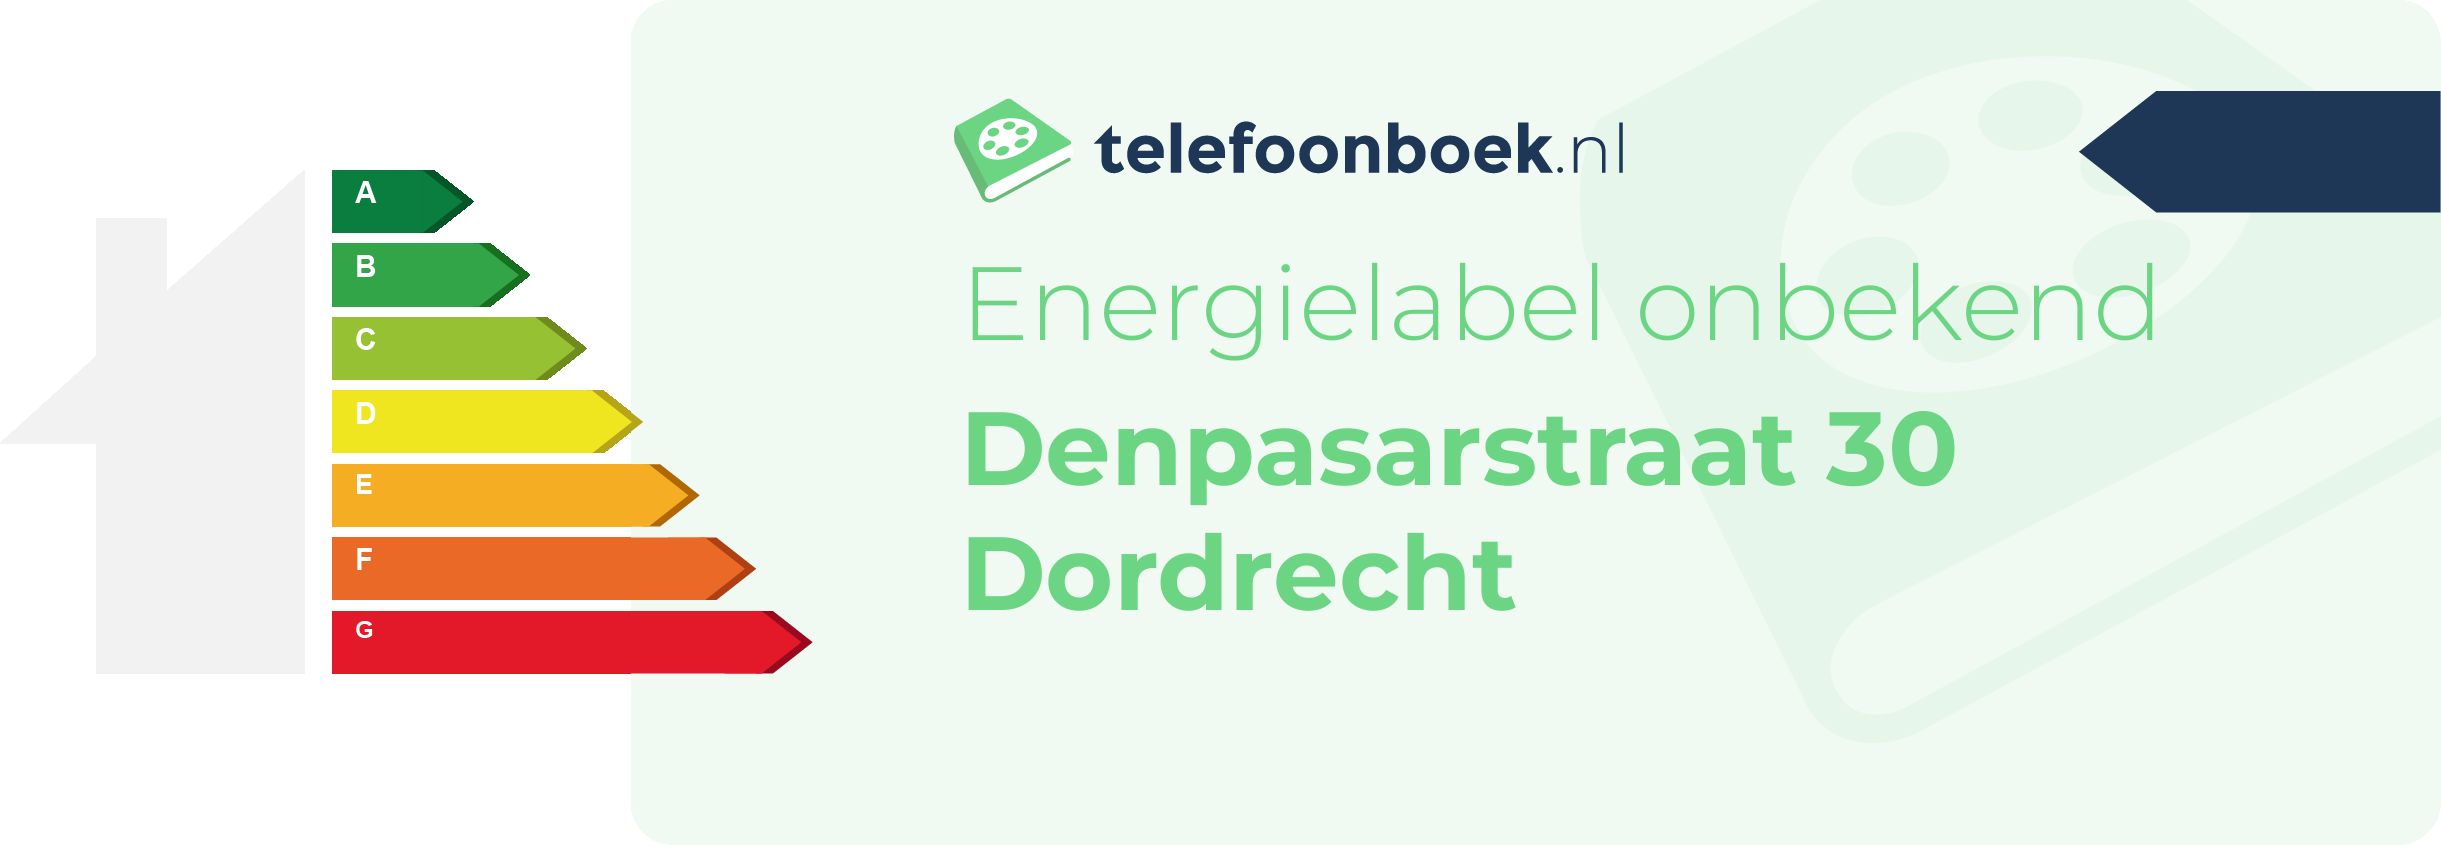 Energielabel Denpasarstraat 30 Dordrecht